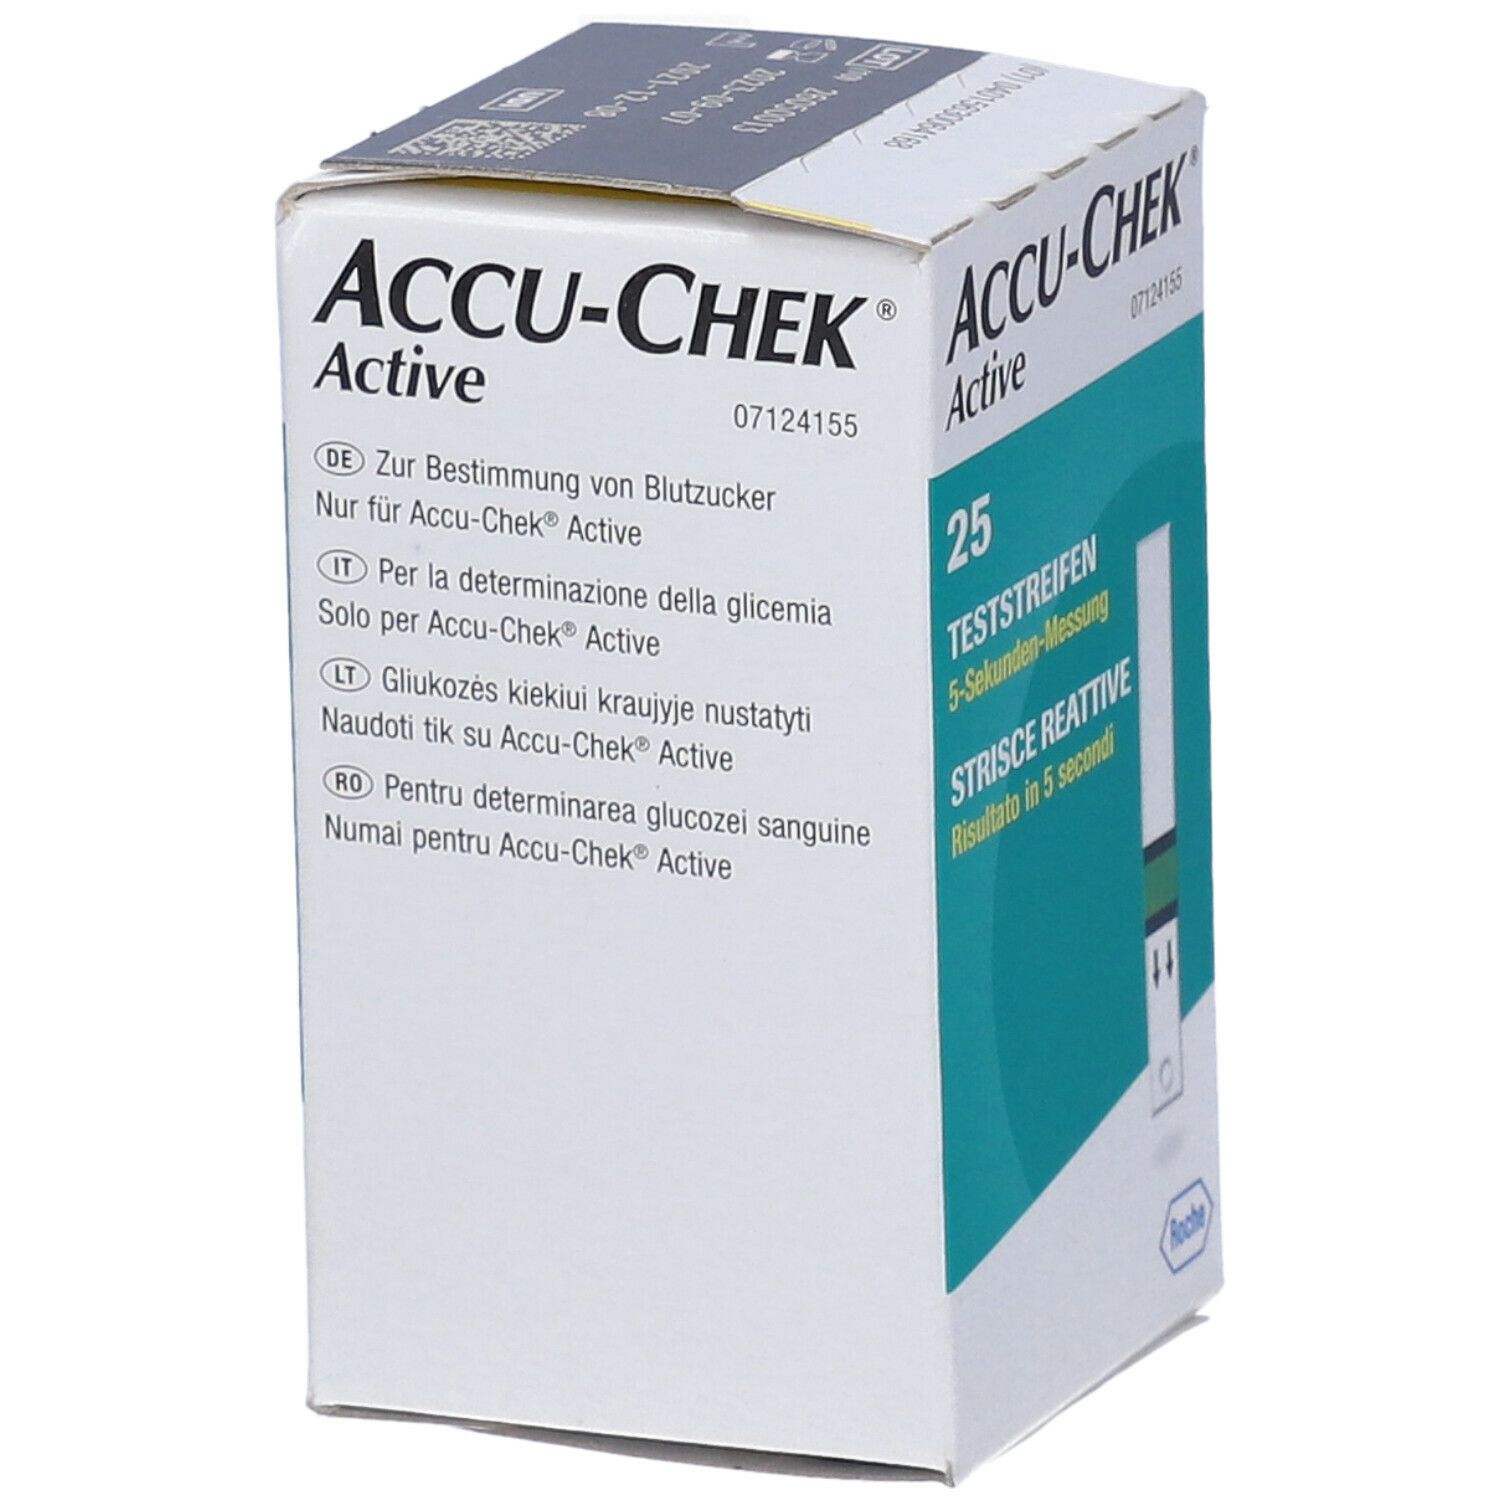 ACCU-CHEK® Active Strisce